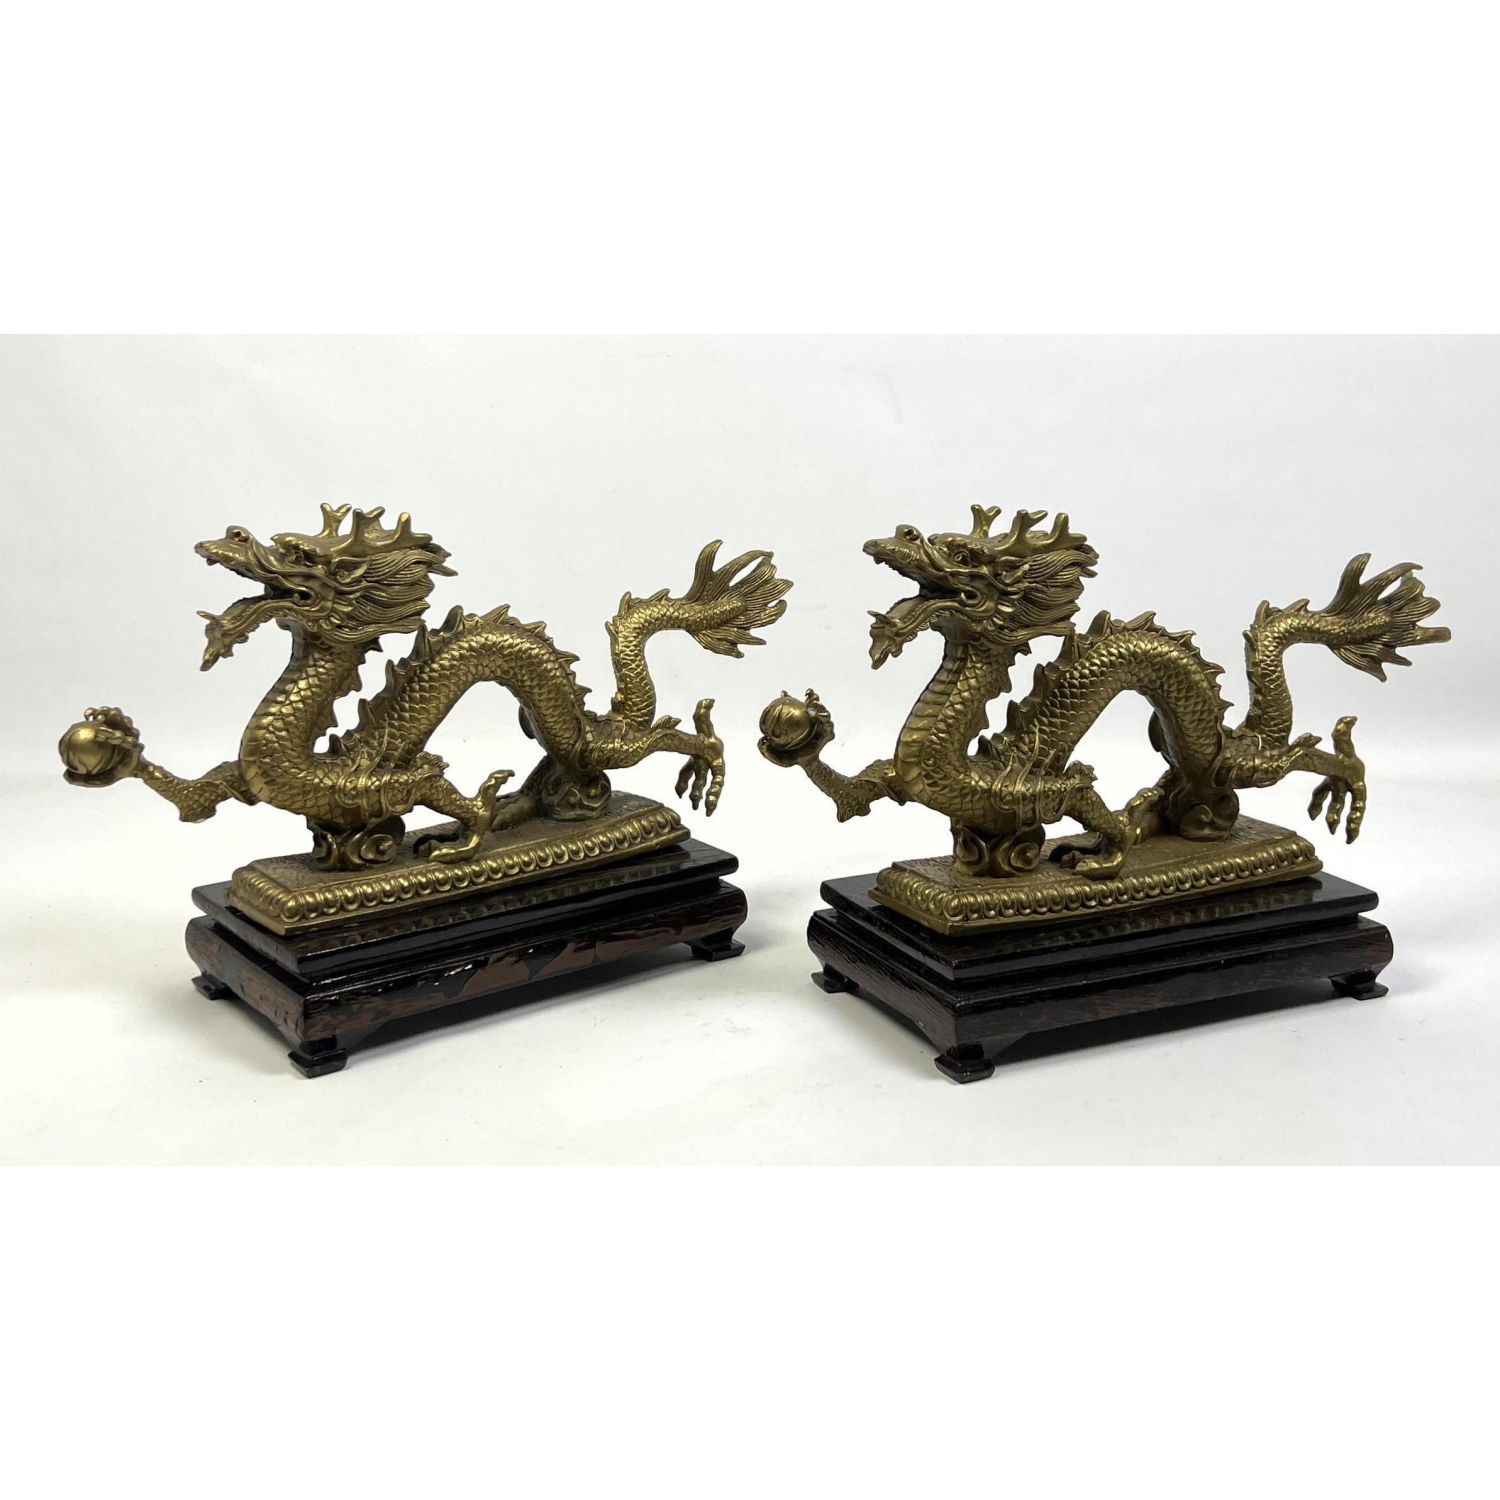 Pr Figural Brass Dragon Sculptures  2b925e